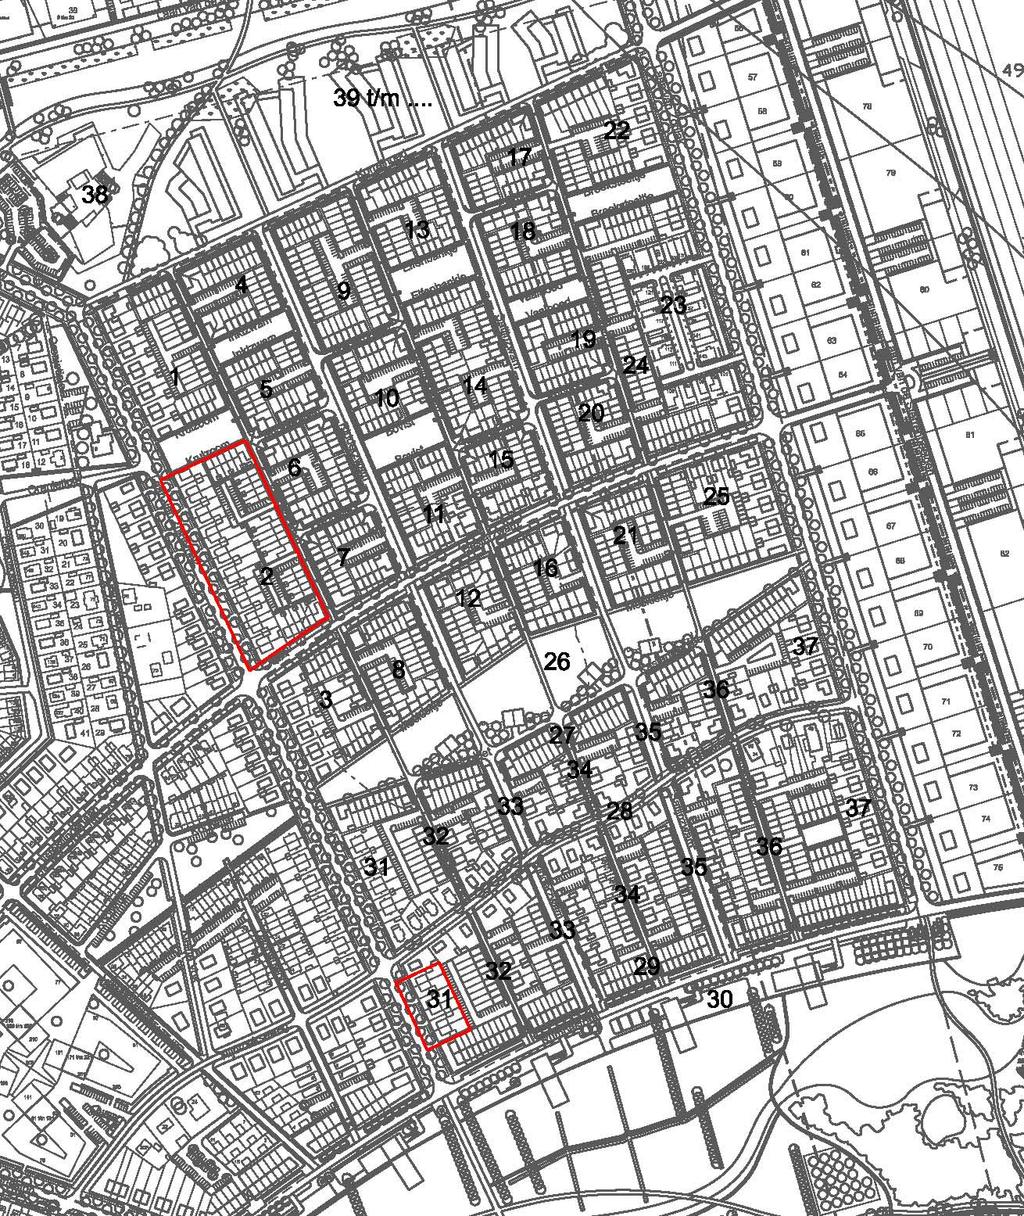 gedeelte van deelgebied Het Rooster. De locaties betreffen vlek 2 en vlek 31 van het verkavelingsplan (zie afbeelding 2). Het Rooster is het tweede grote woningbouwgebied van Zuidbroek.